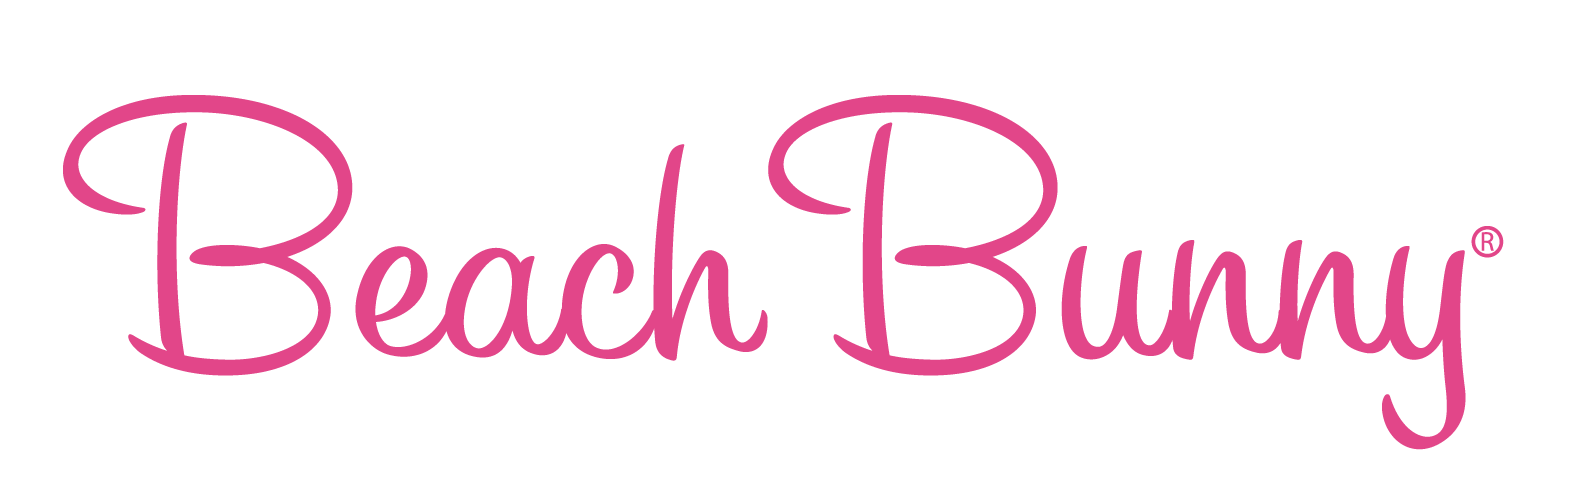 BB-Pink-logo